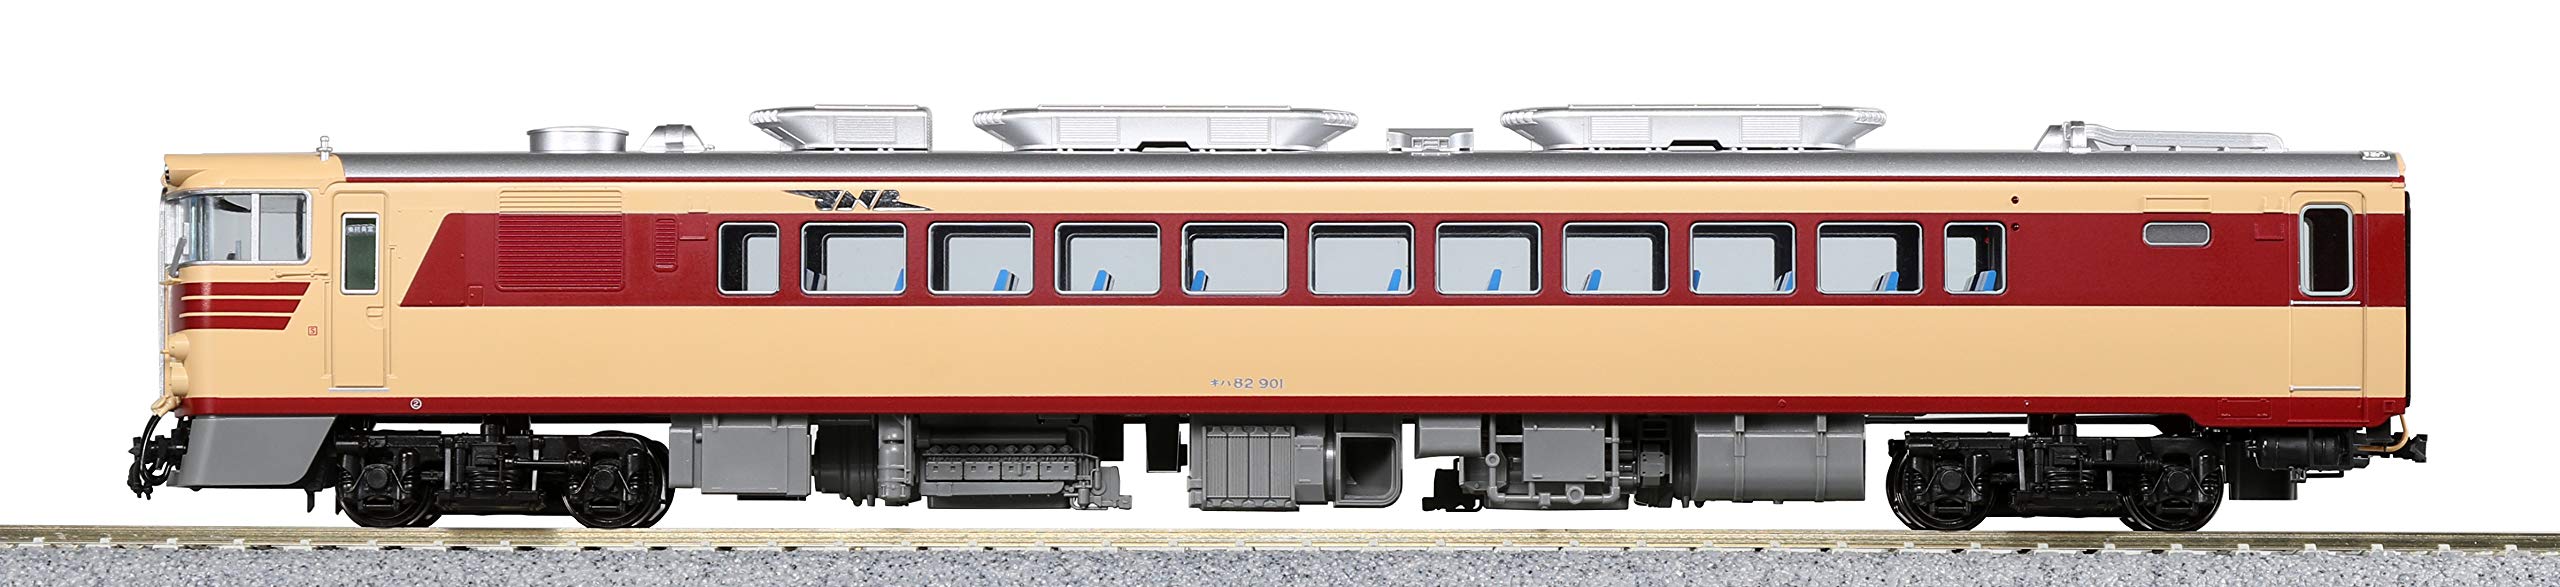 Kato Ho Gauge Diesel Model Railway Car Kiha82 900 Series 1-613